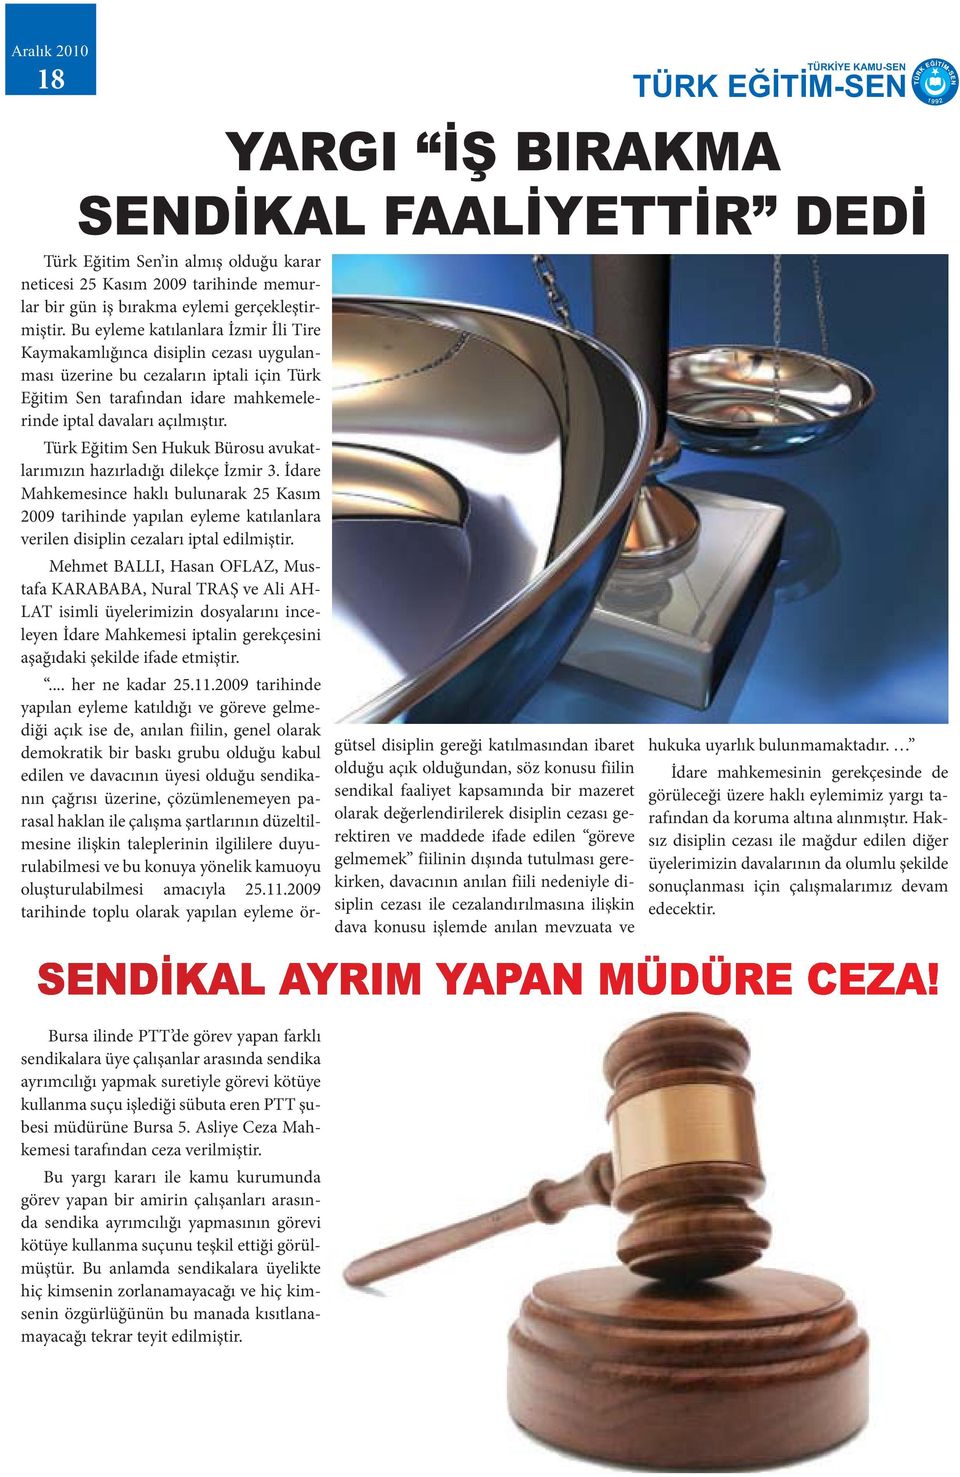 Türk Eğitim Sen Hukuk Bürosu avukatlarımızın hazırladığı dilekçe İzmir 3.